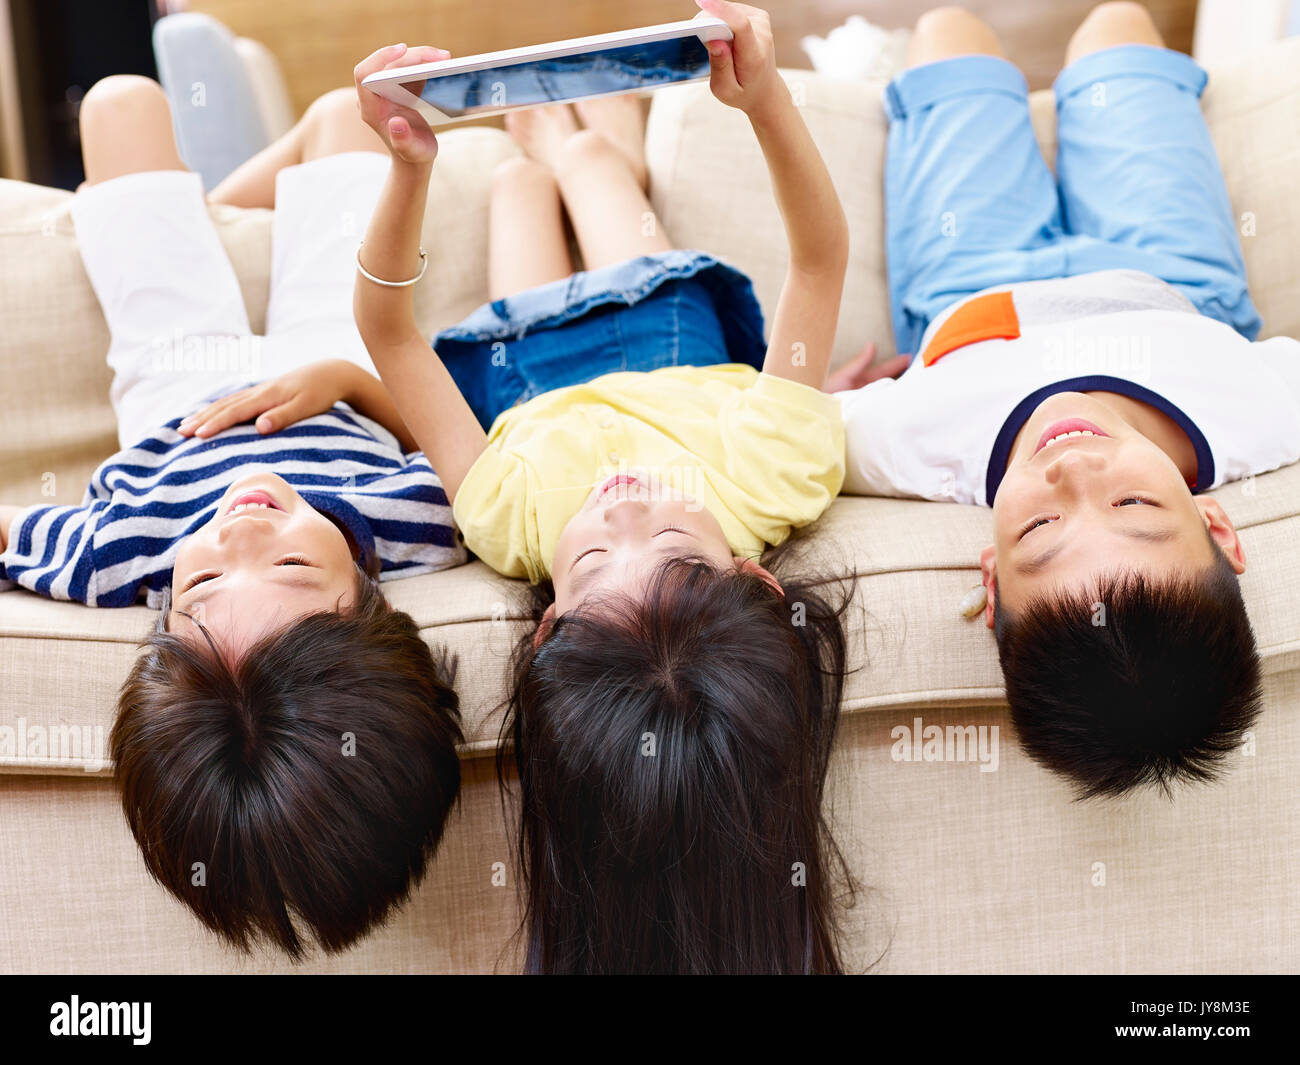 Trois enfants d'asie se trouvant sur la table accueil playing video game using digital tablet. Banque D'Images